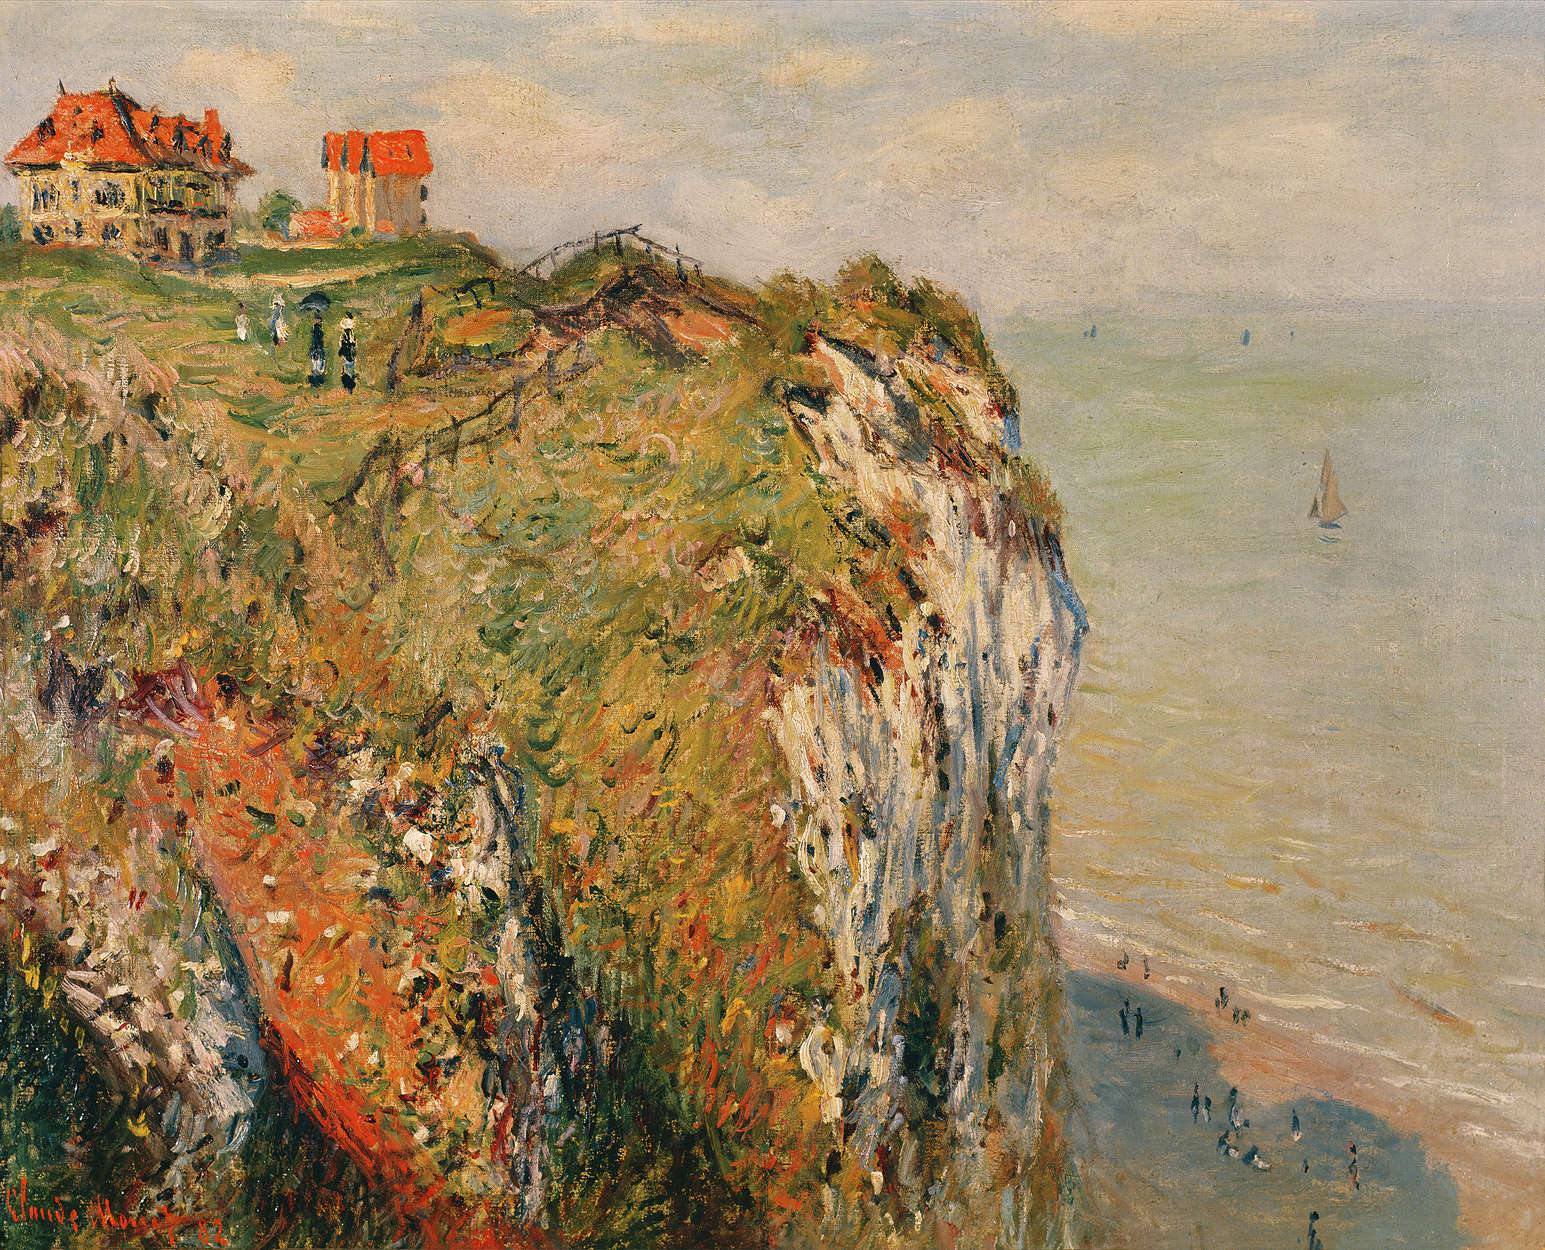             Muurschildering "Klif bij Dieppe" van Claude Monet
        